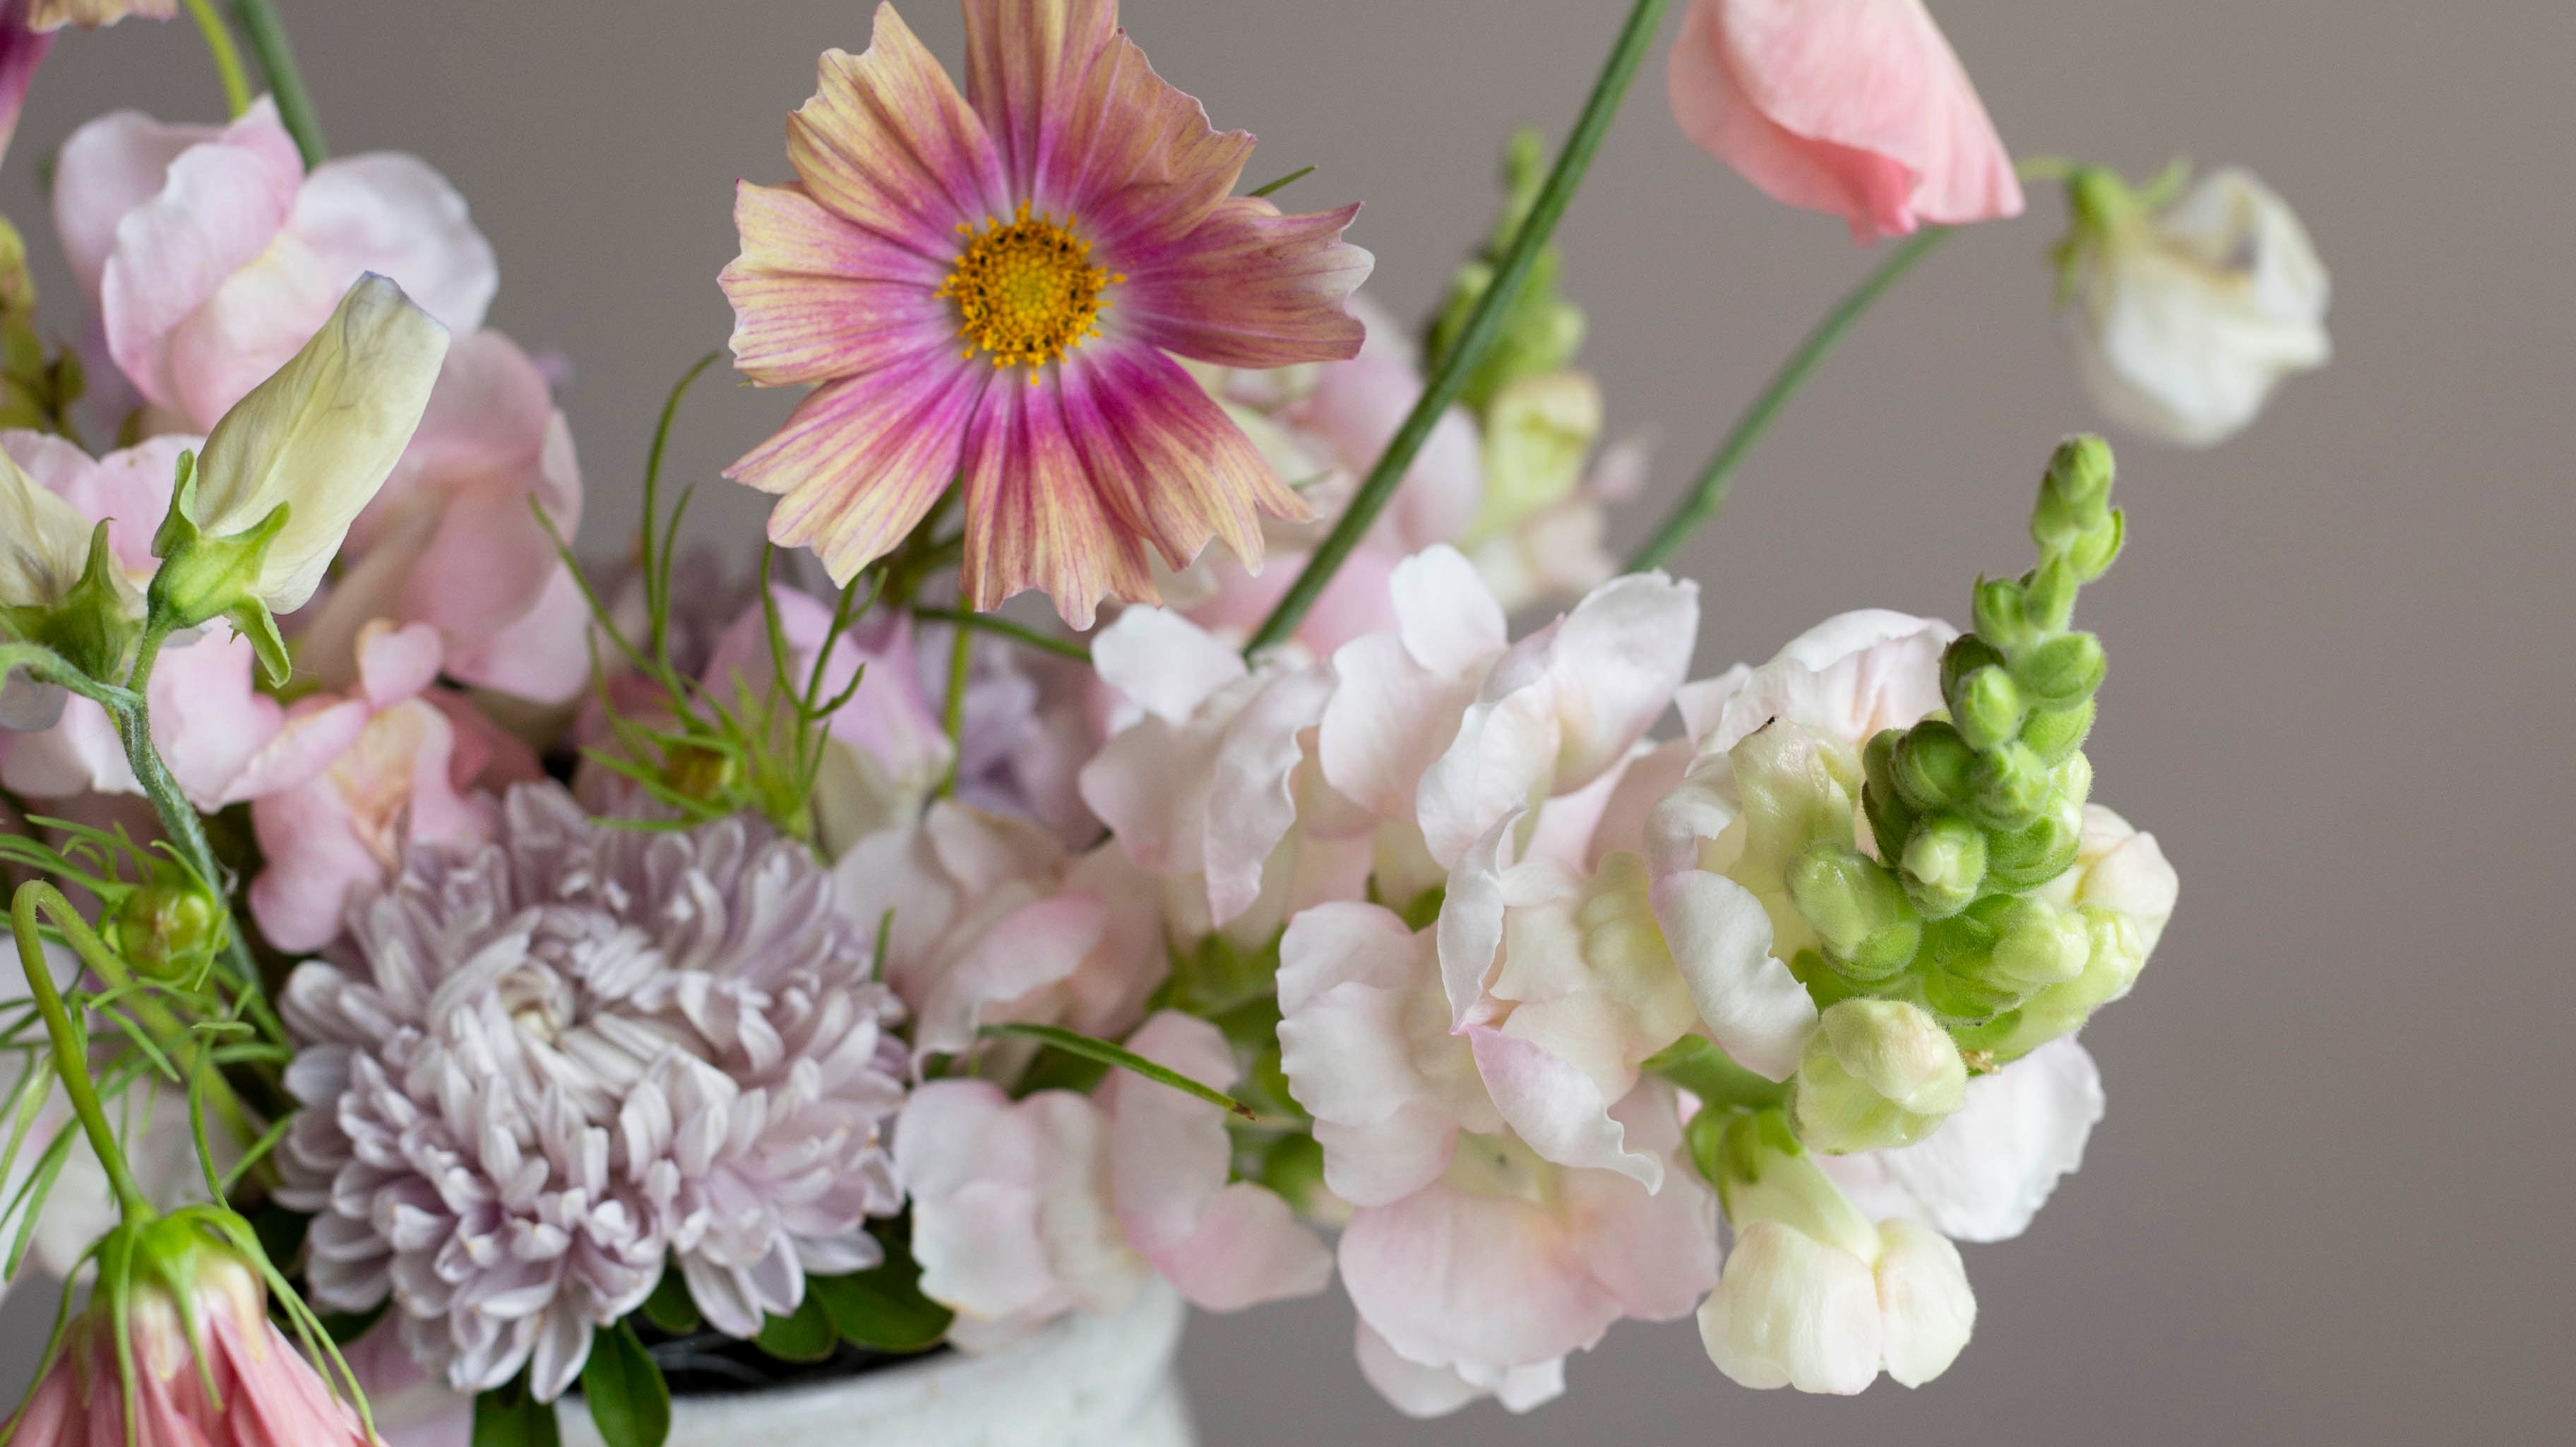 Anna pikkujoululahja, joka ilahduttaa oikeasti – tutustu mitä kauniimpien kukkien siemeniin